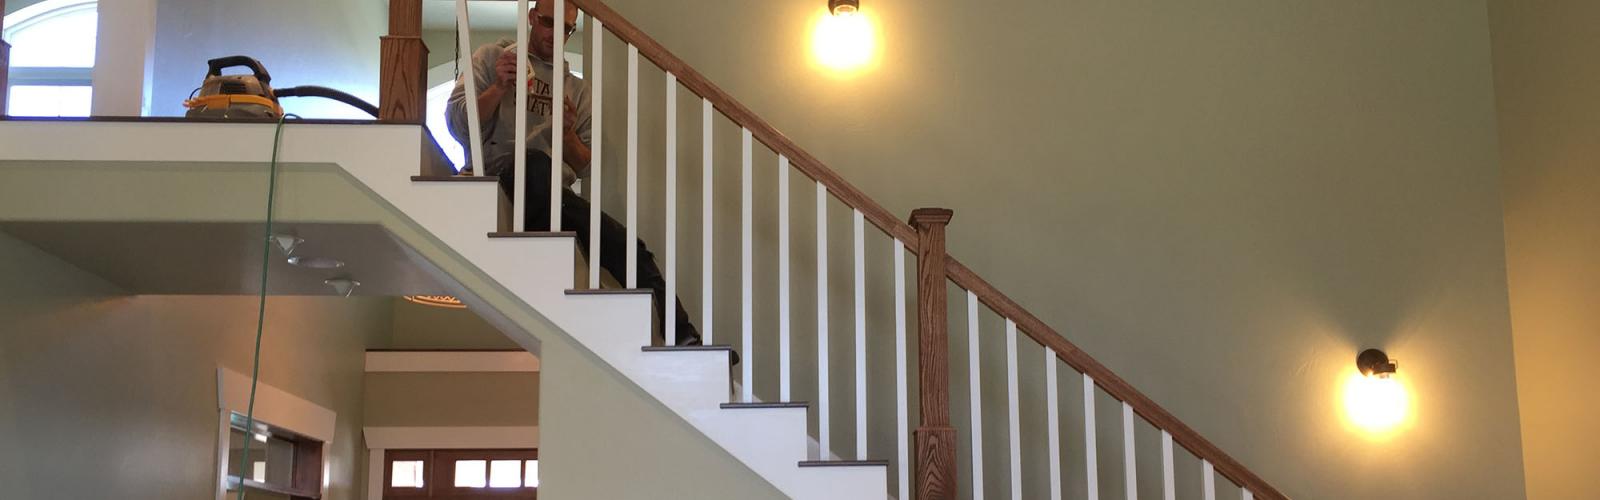 lighted stairway handrail installation